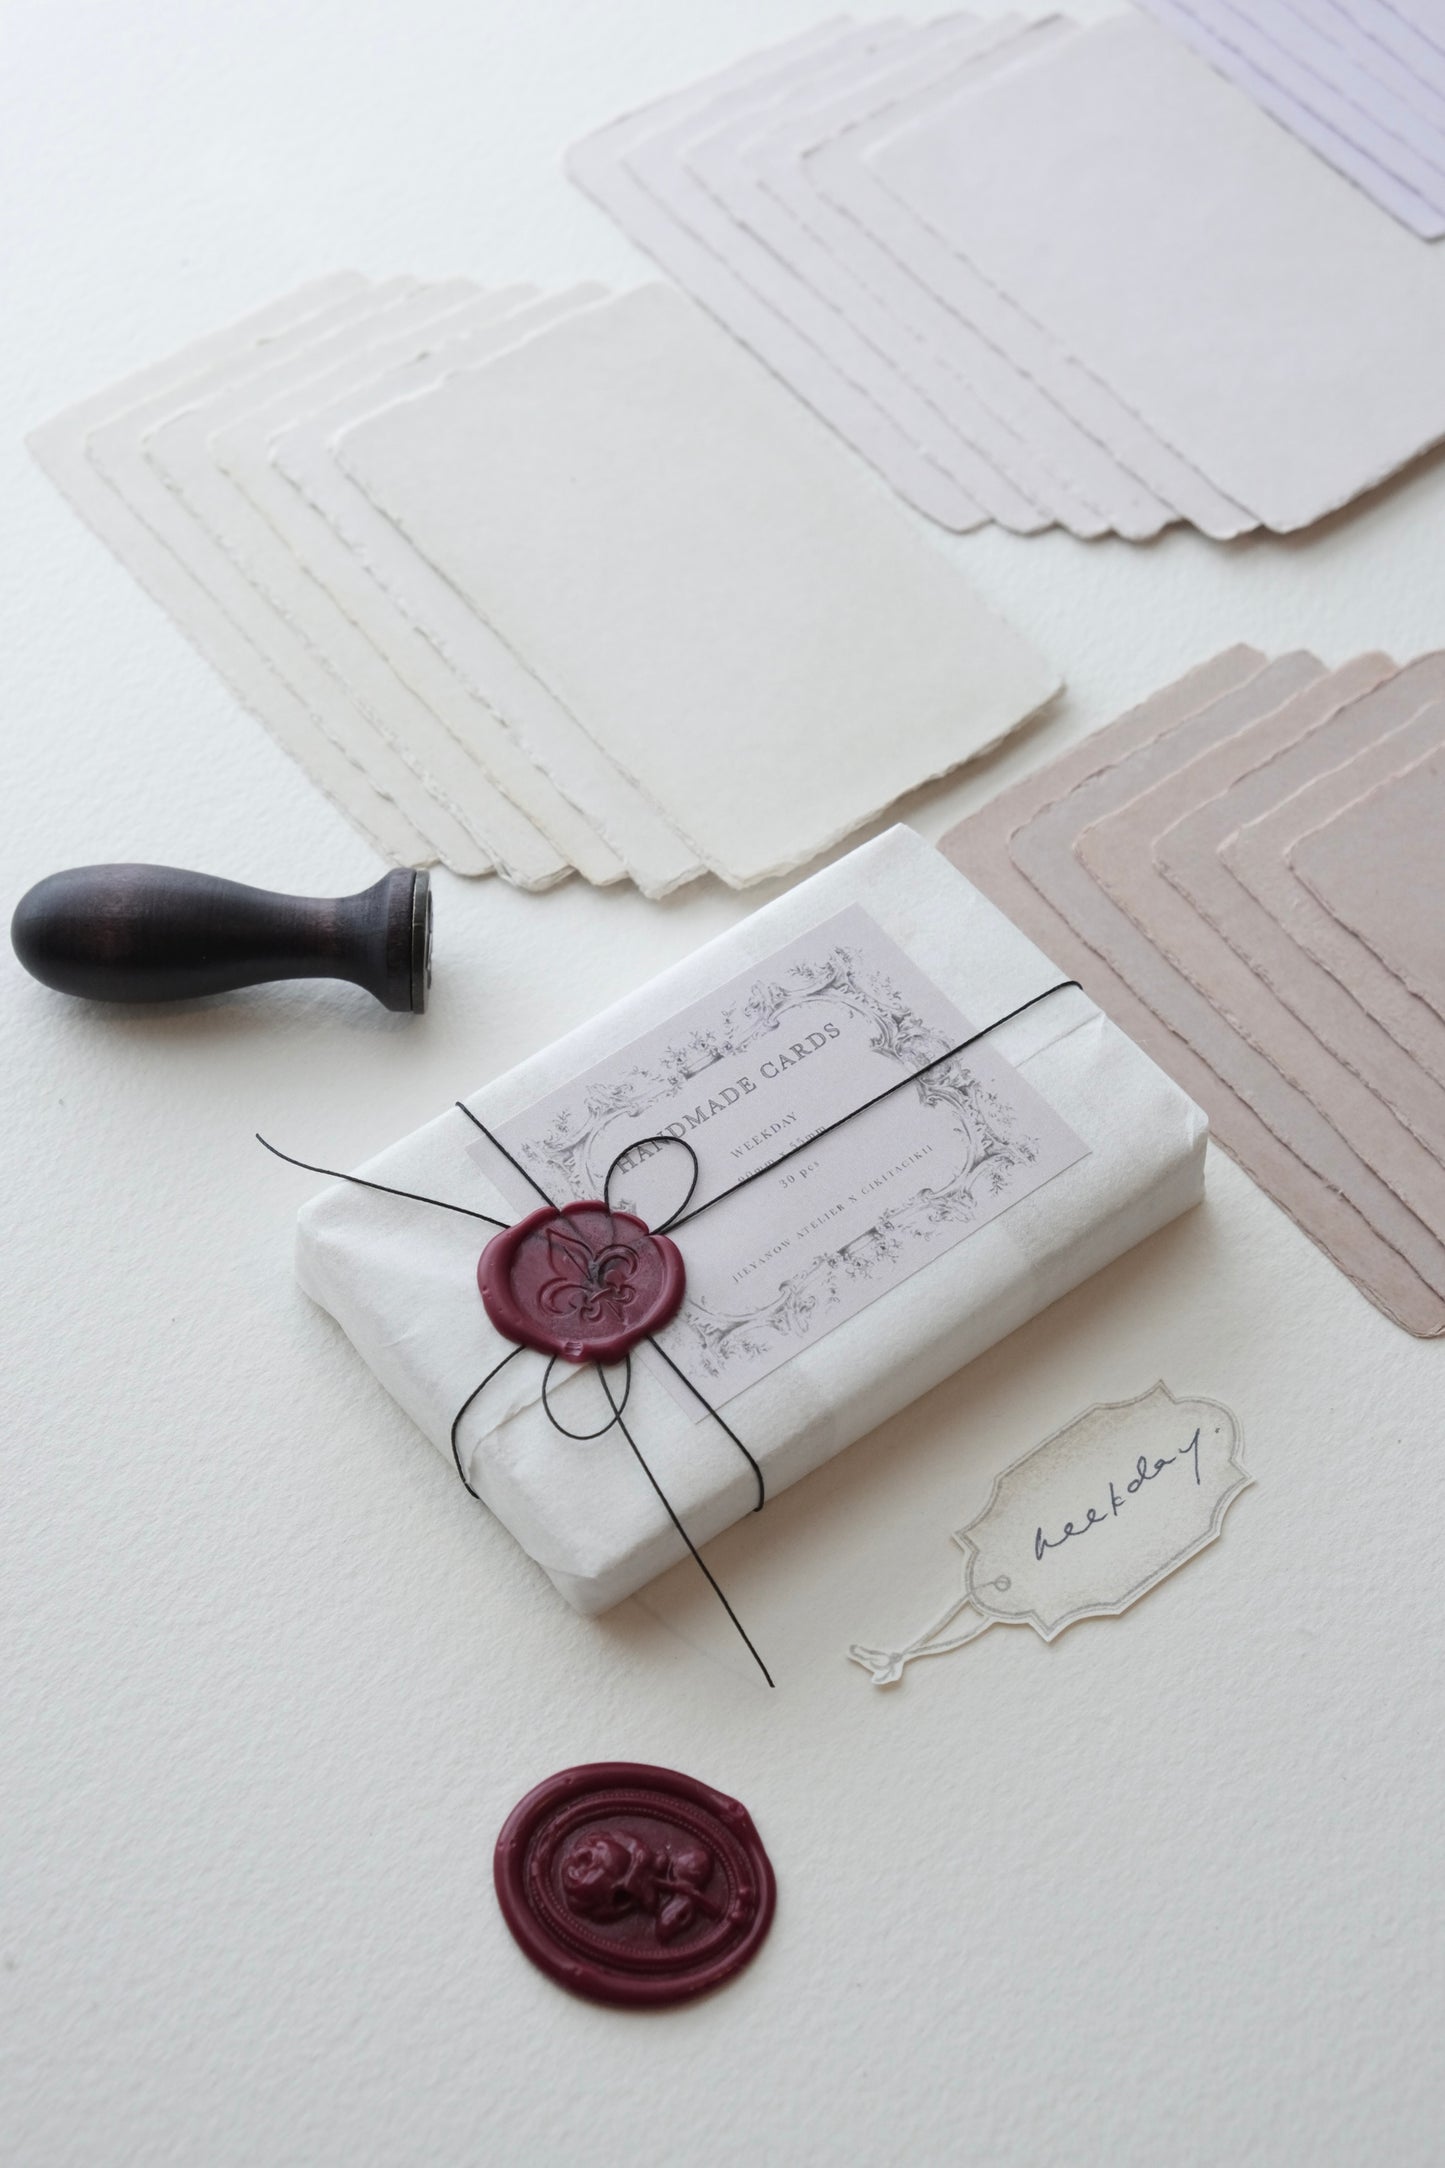 Jieyanow Atelier Handmade Cards, Collaboration with Cikitacikii